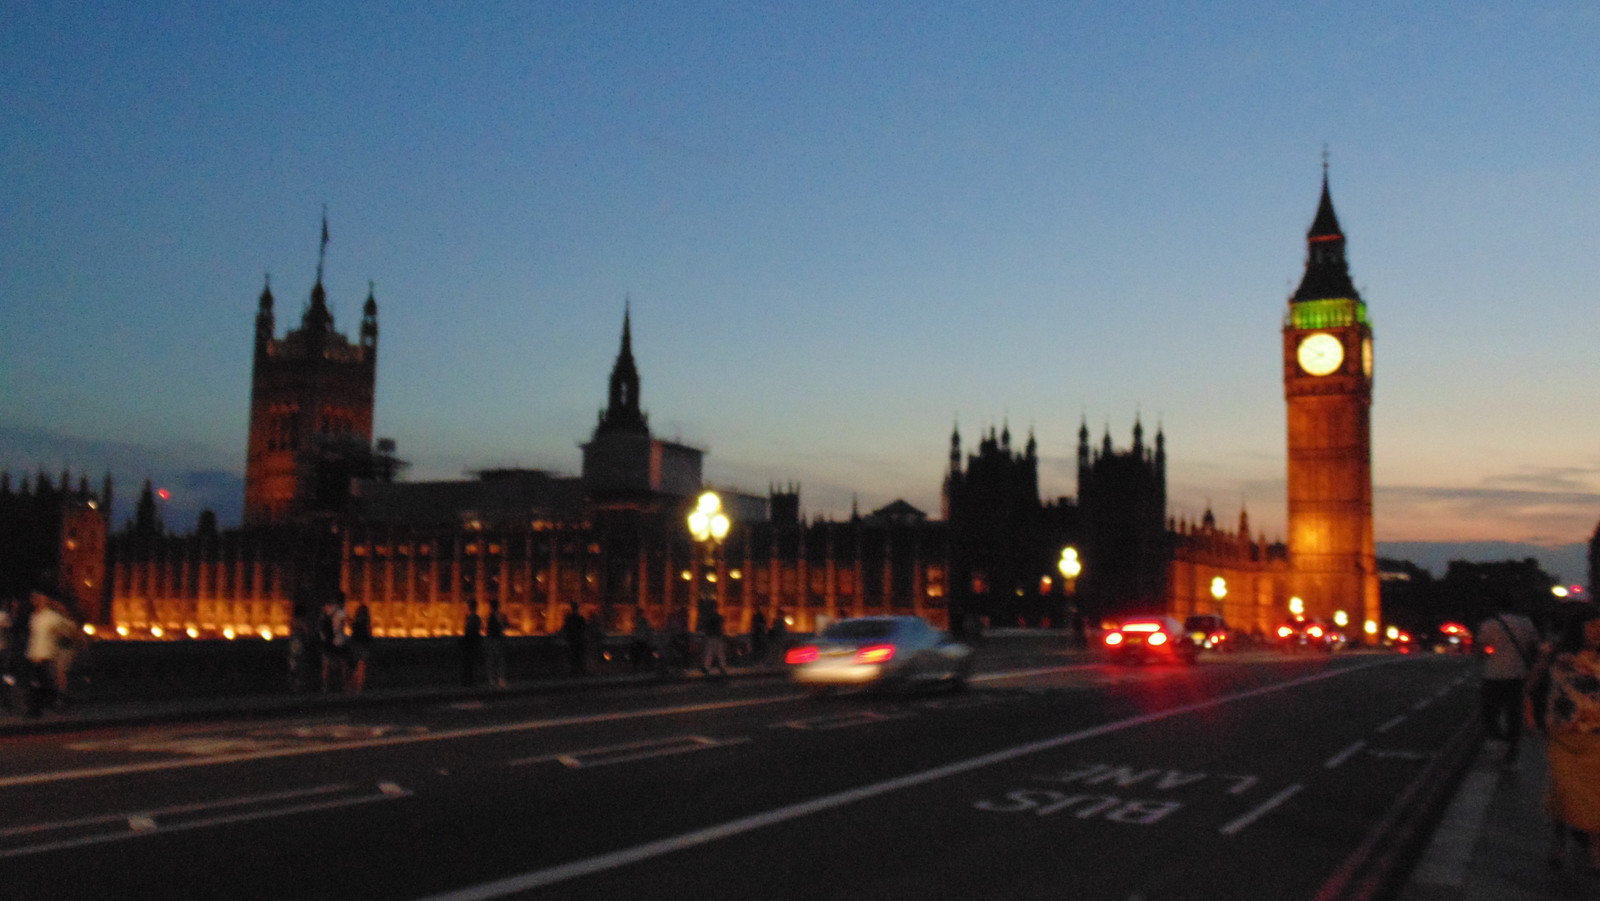 Houses of Parliament / Big Ben